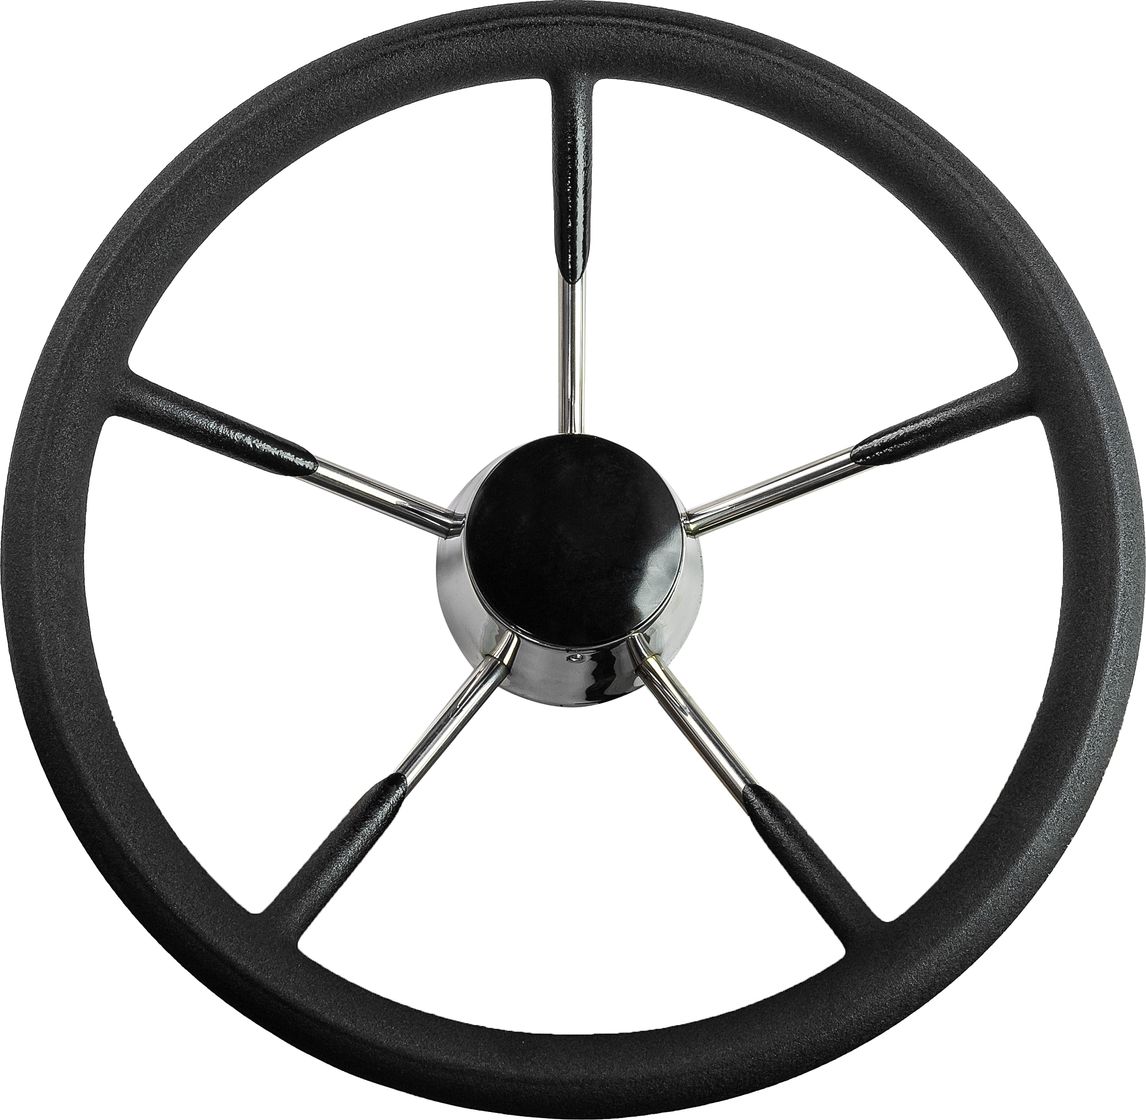 Рулевое колесо черный обод, стальные спицы, диаметр 340 мм 73053-01 рулевое колесо диаметр 320 мм 73056 02sl